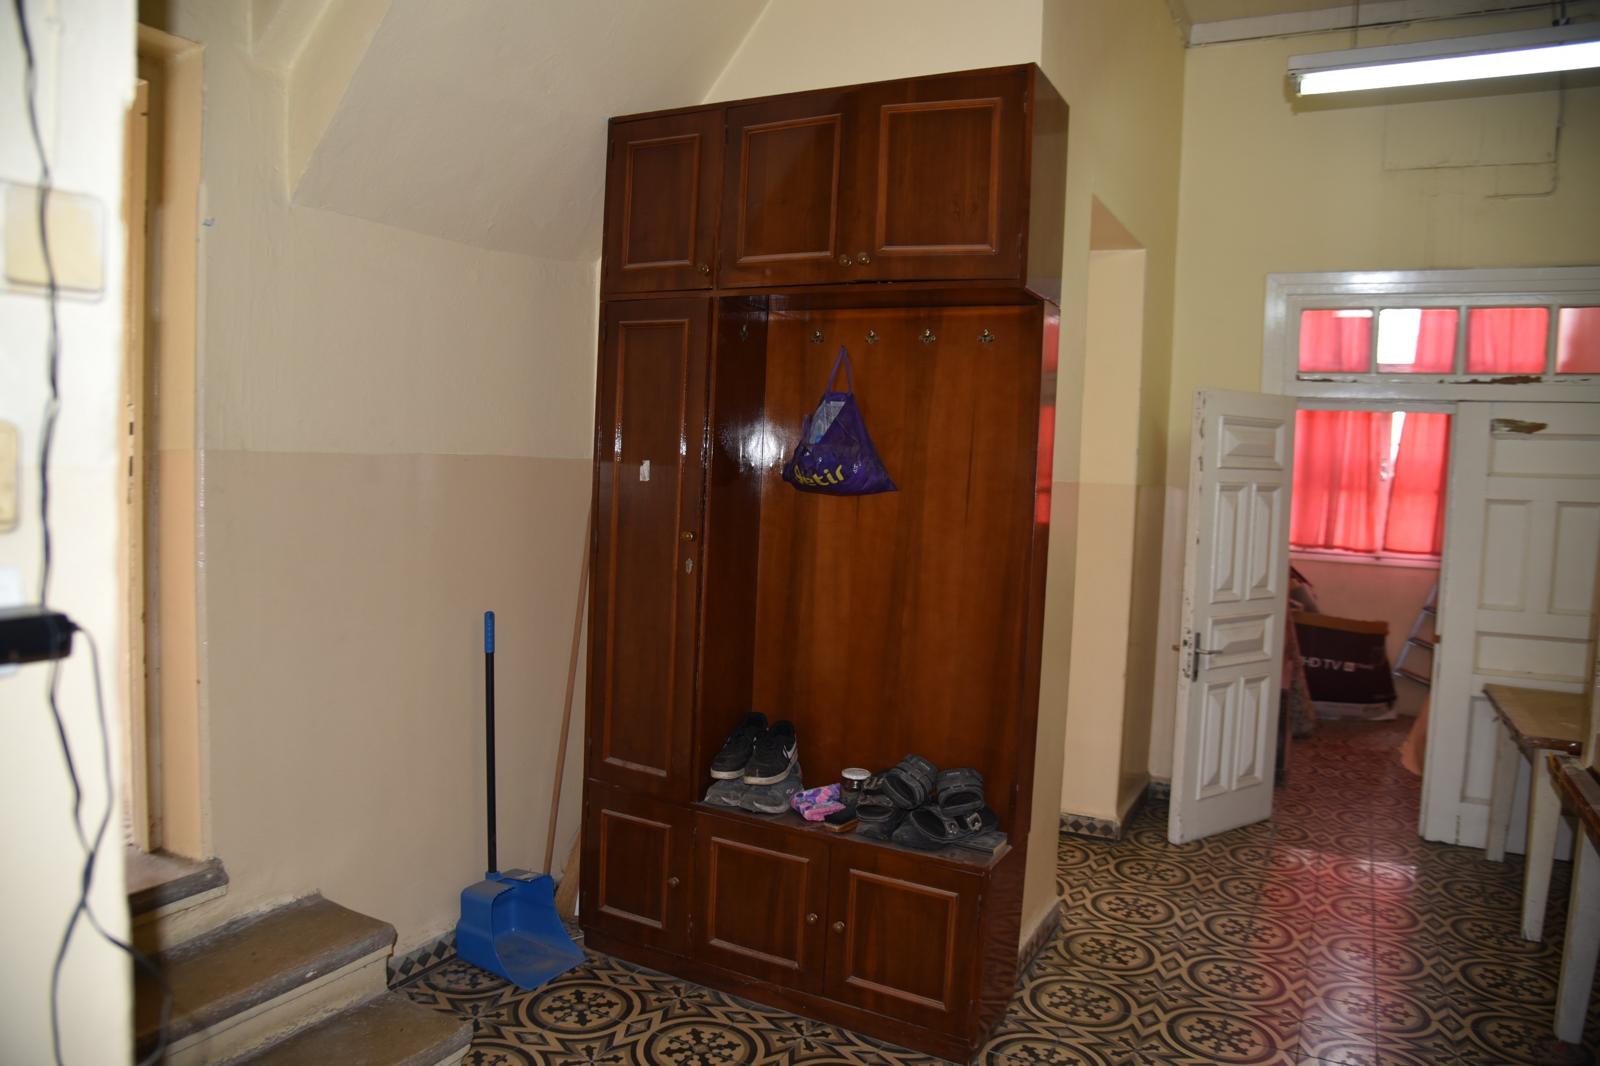 Ceyhan’da belediyeye hibe edilen tarihi ‘Güleçyüz Konak’ restore edilip sosyal tesis olarak kullanılacak